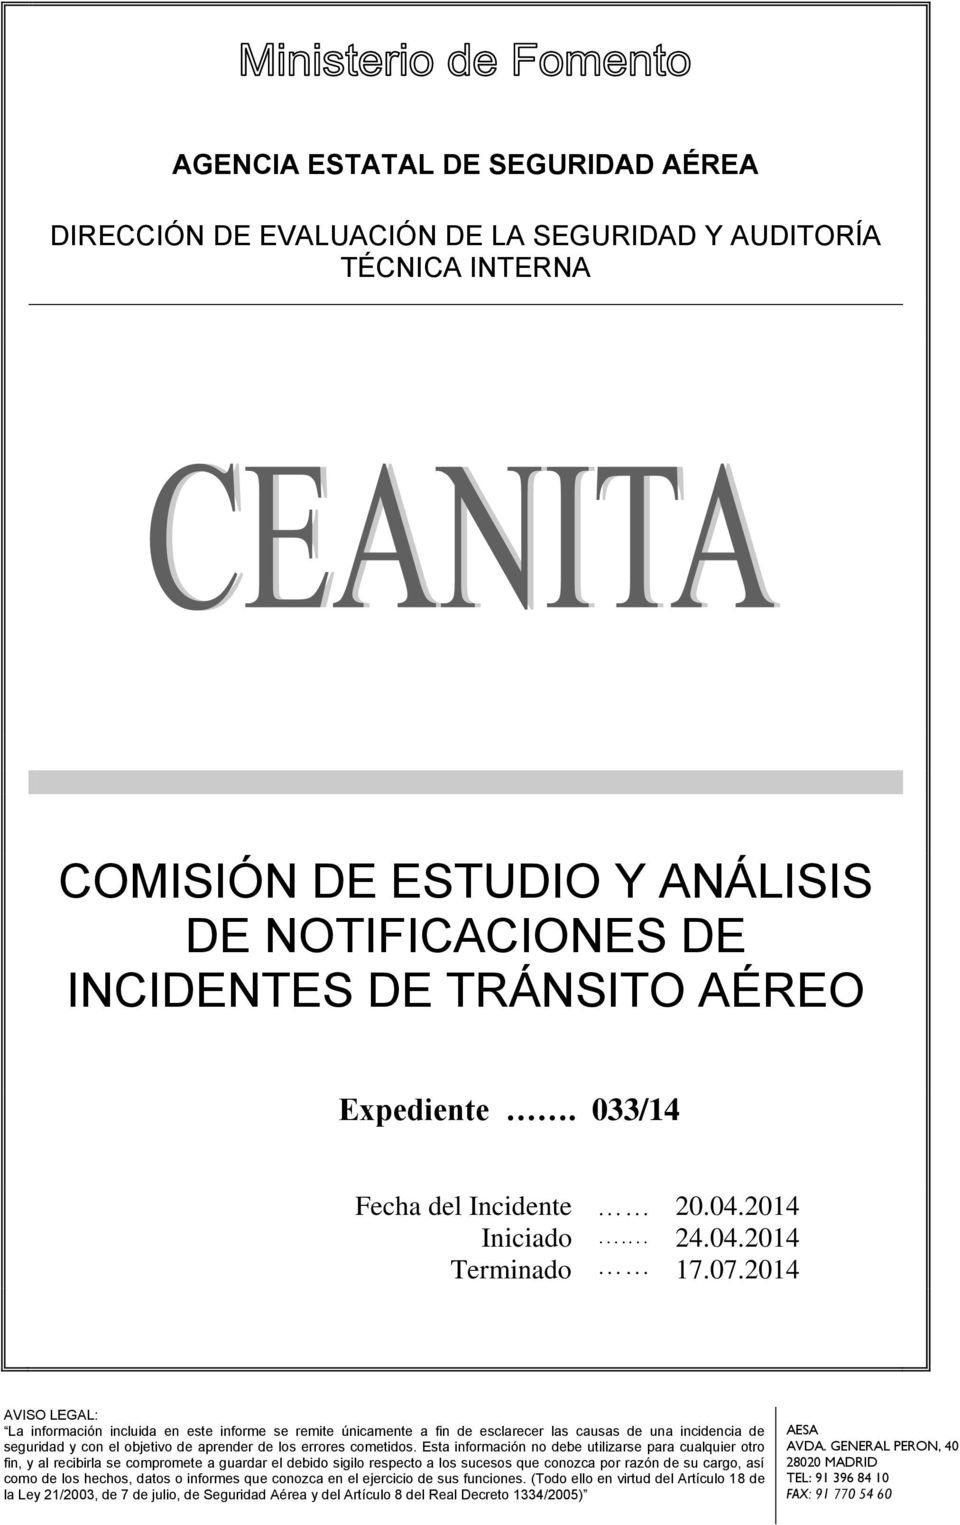 2014 AVISO LEGAL: La información incluida en este informe se remite únicamente a fin de esclarecer las causas de una incidencia de seguridad y con el objetivo de aprender de los errores cometidos.